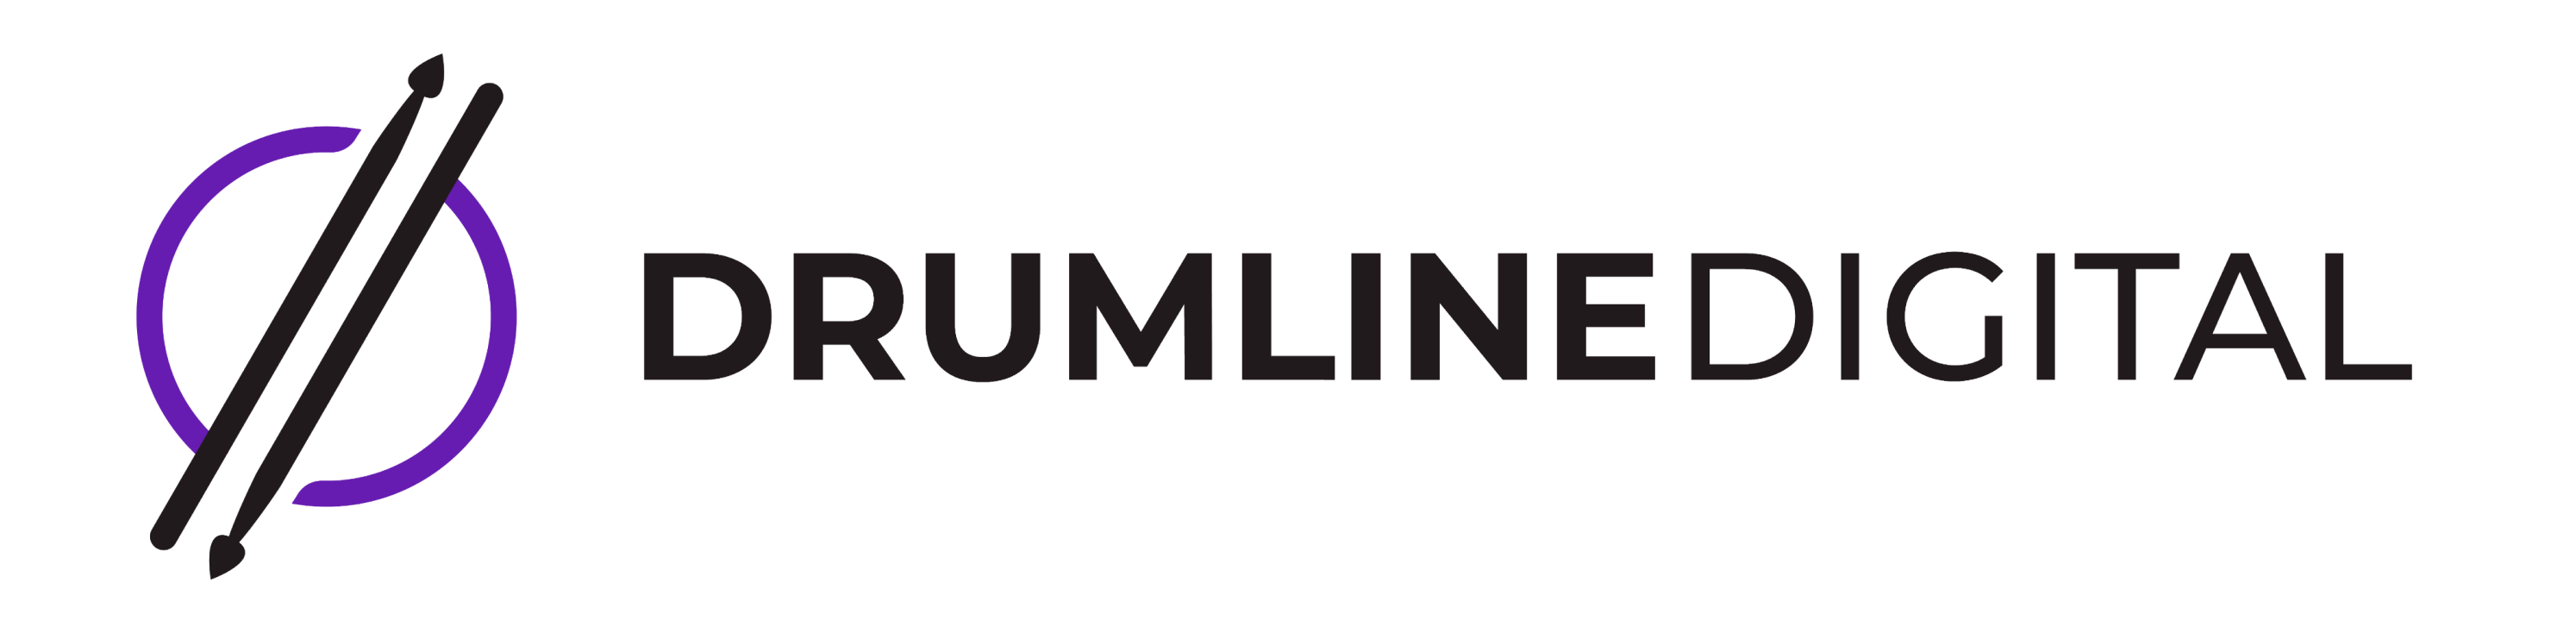 drumline-logo-lesswhite